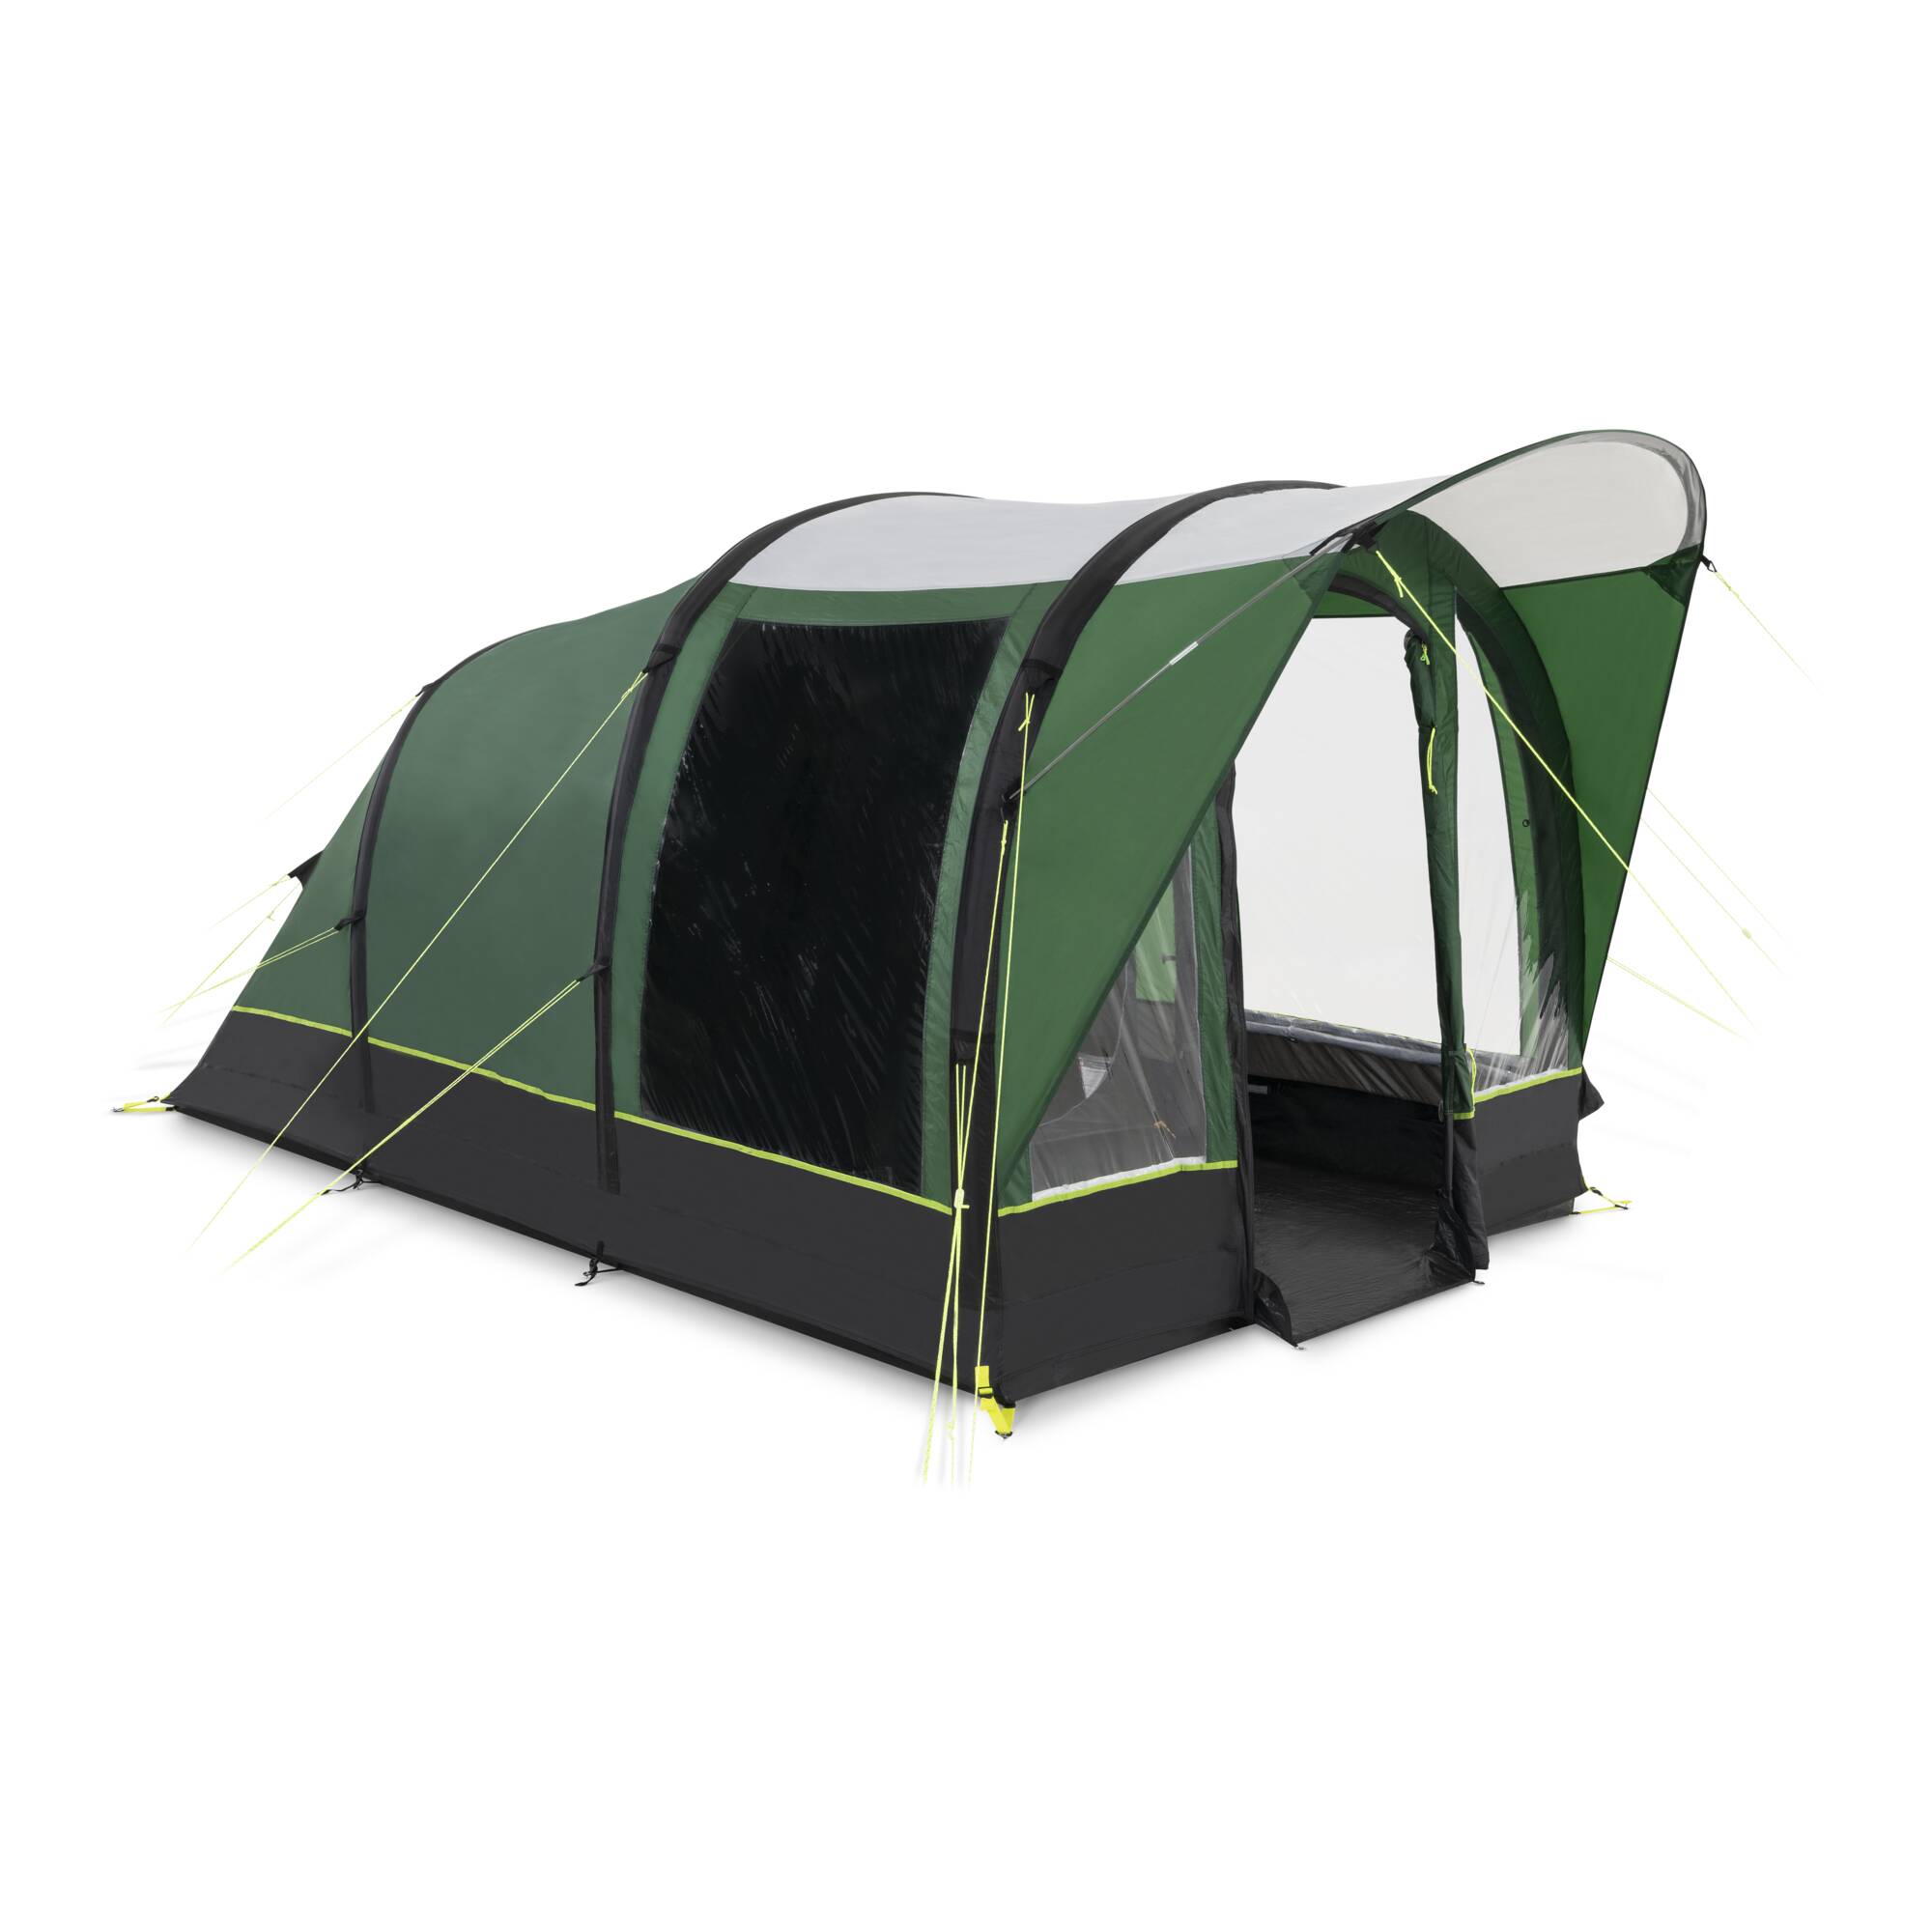 Dometic Brean 3 Tent Spare Parts